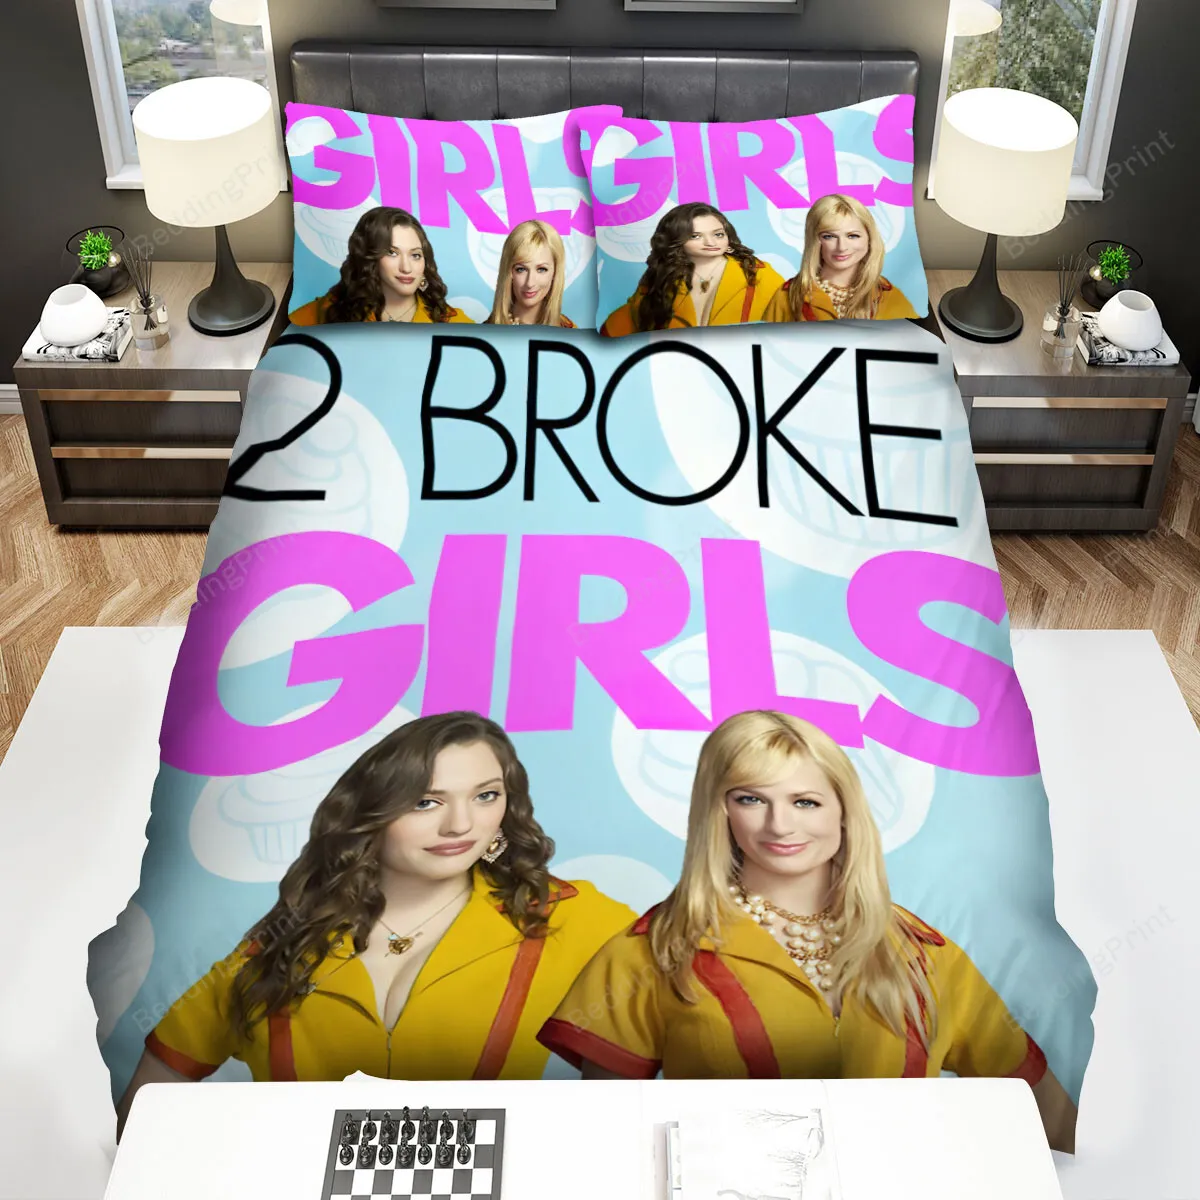 2 Broke Girls (20112017) Movie Poster Fanart Bed Sheets Spread Comforter Duvet Cover Bedding Sets